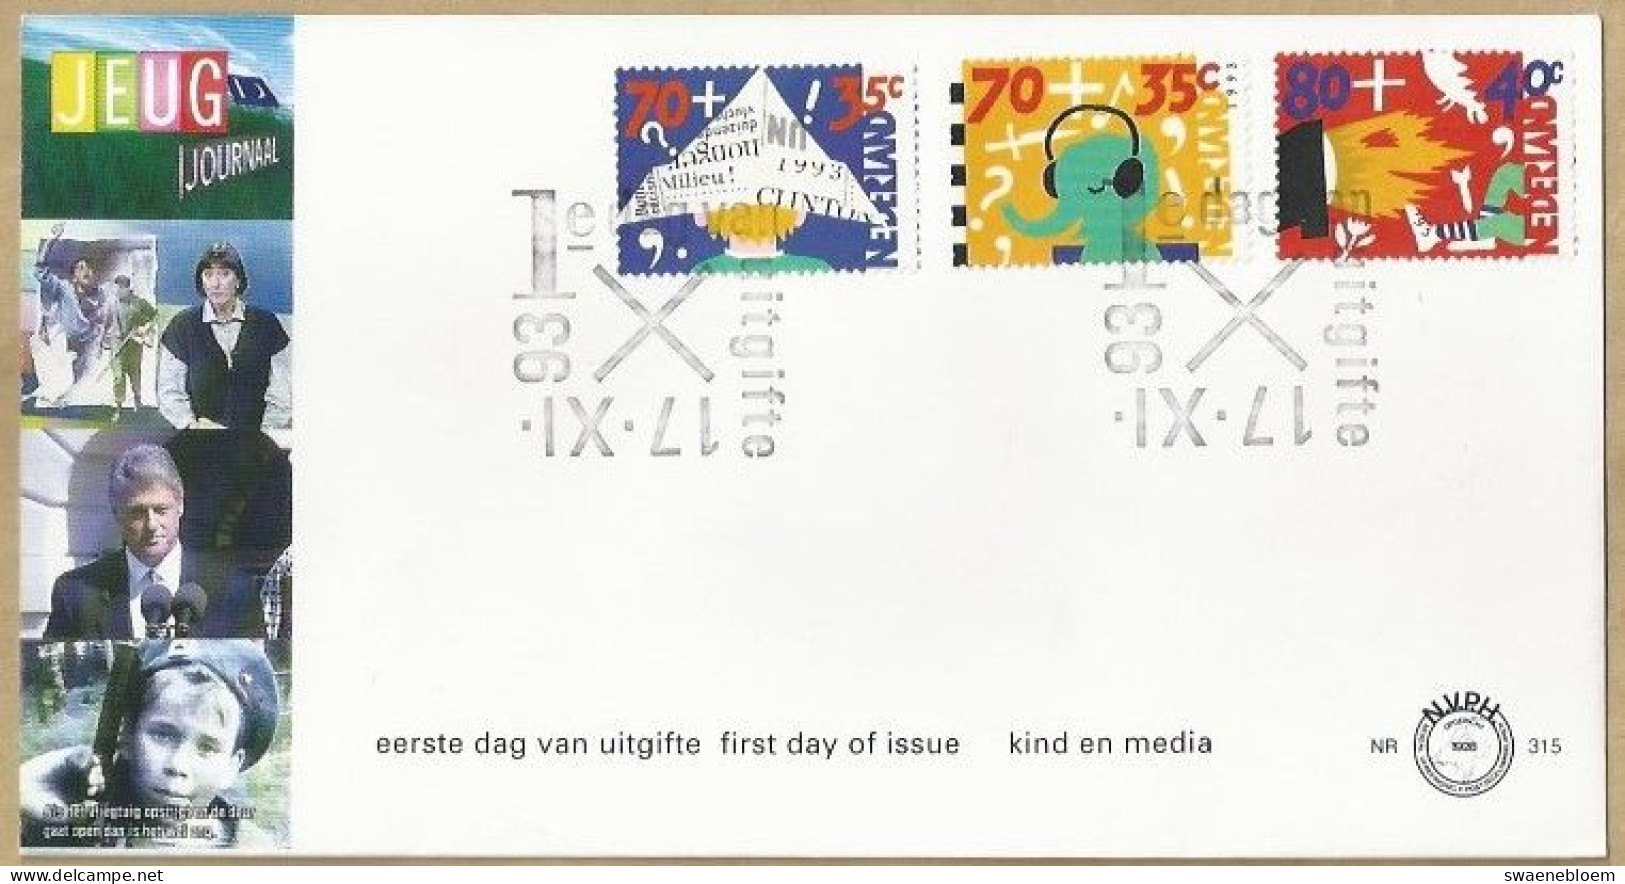 NL.- FDC. NVPH Nr. 315. EERSTE DAG VAN UITGIFTE. FIRST DAY OF ISSUE. 17-11-1993. JEUGD JOURNAAL. - FDC